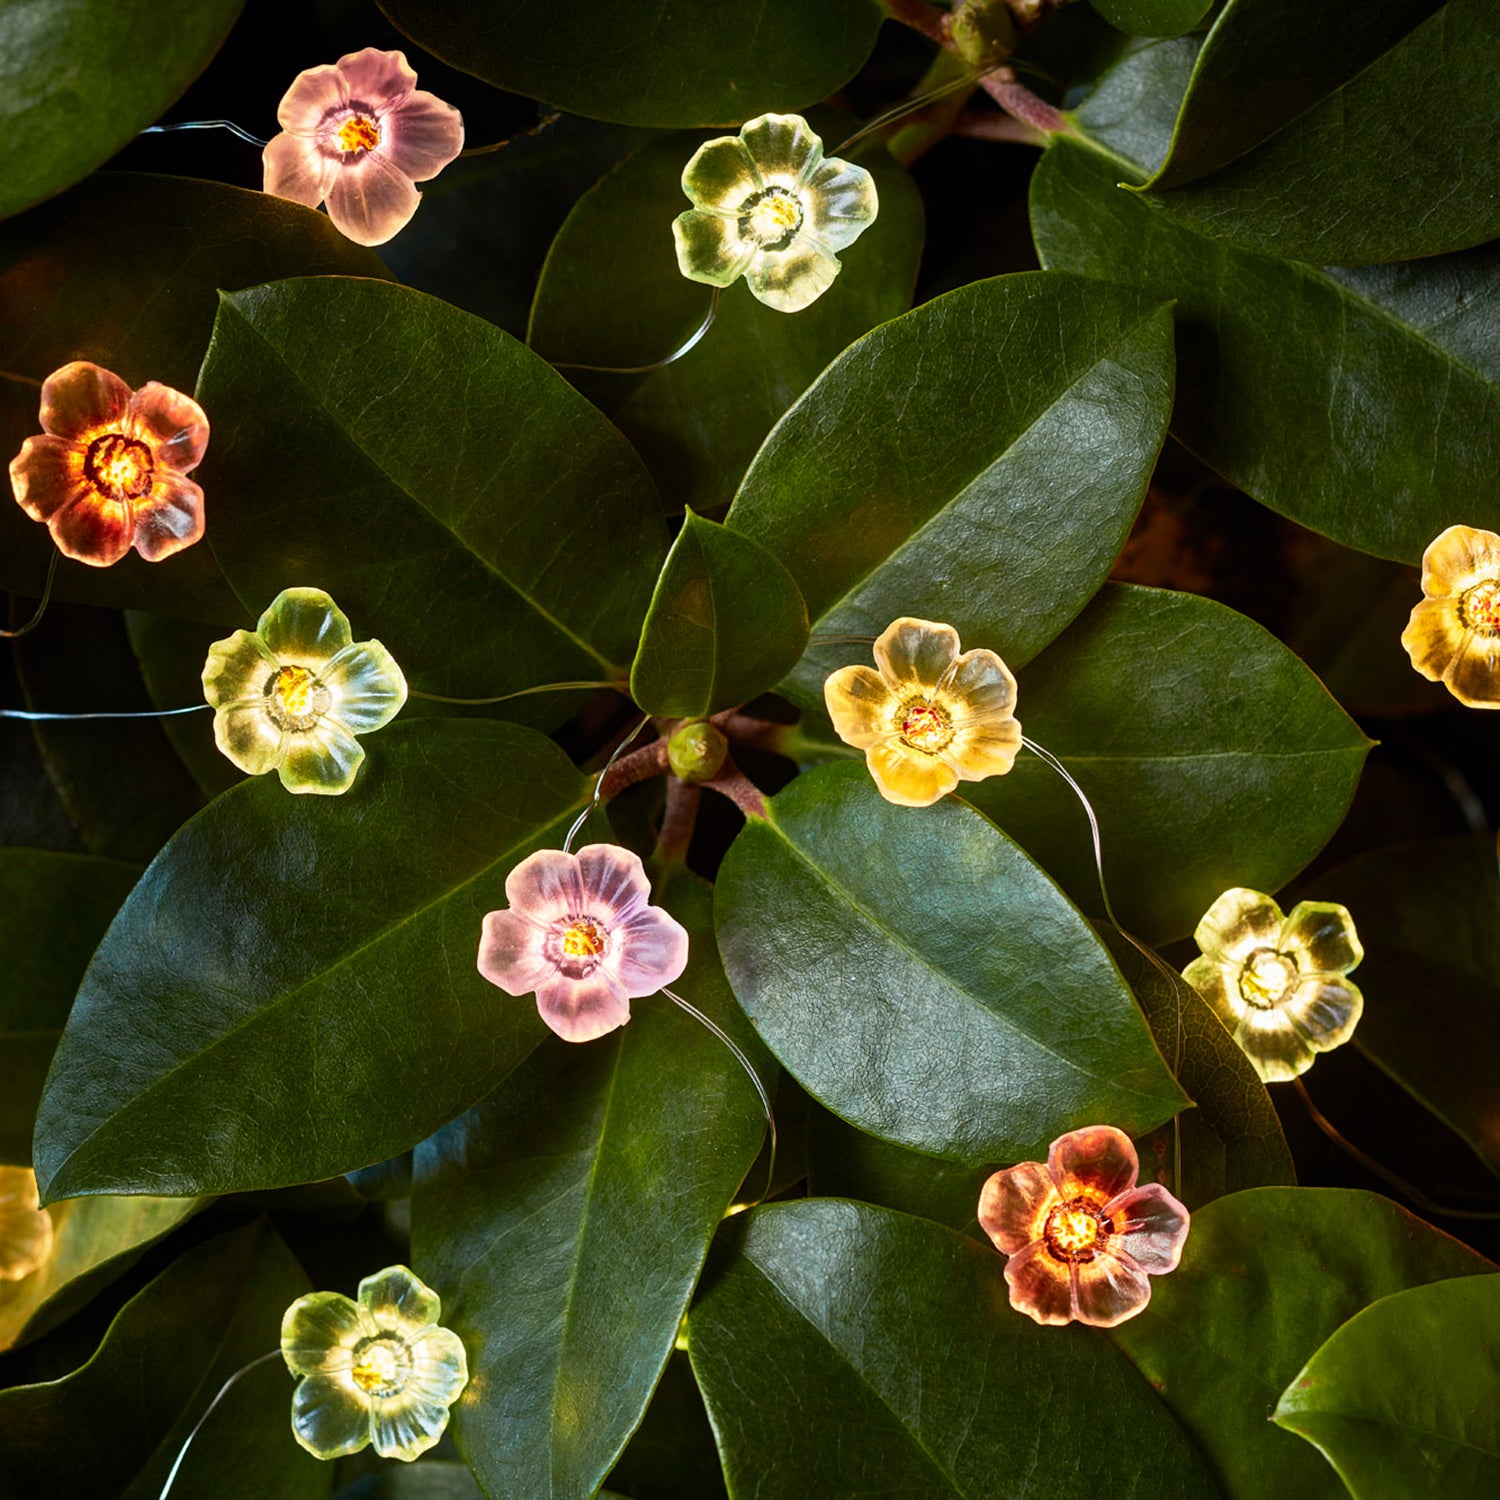 Konstsmide Guirlande lumineuse décorative LED Fleurs, 20 LED, 1.9 m,  intérieur